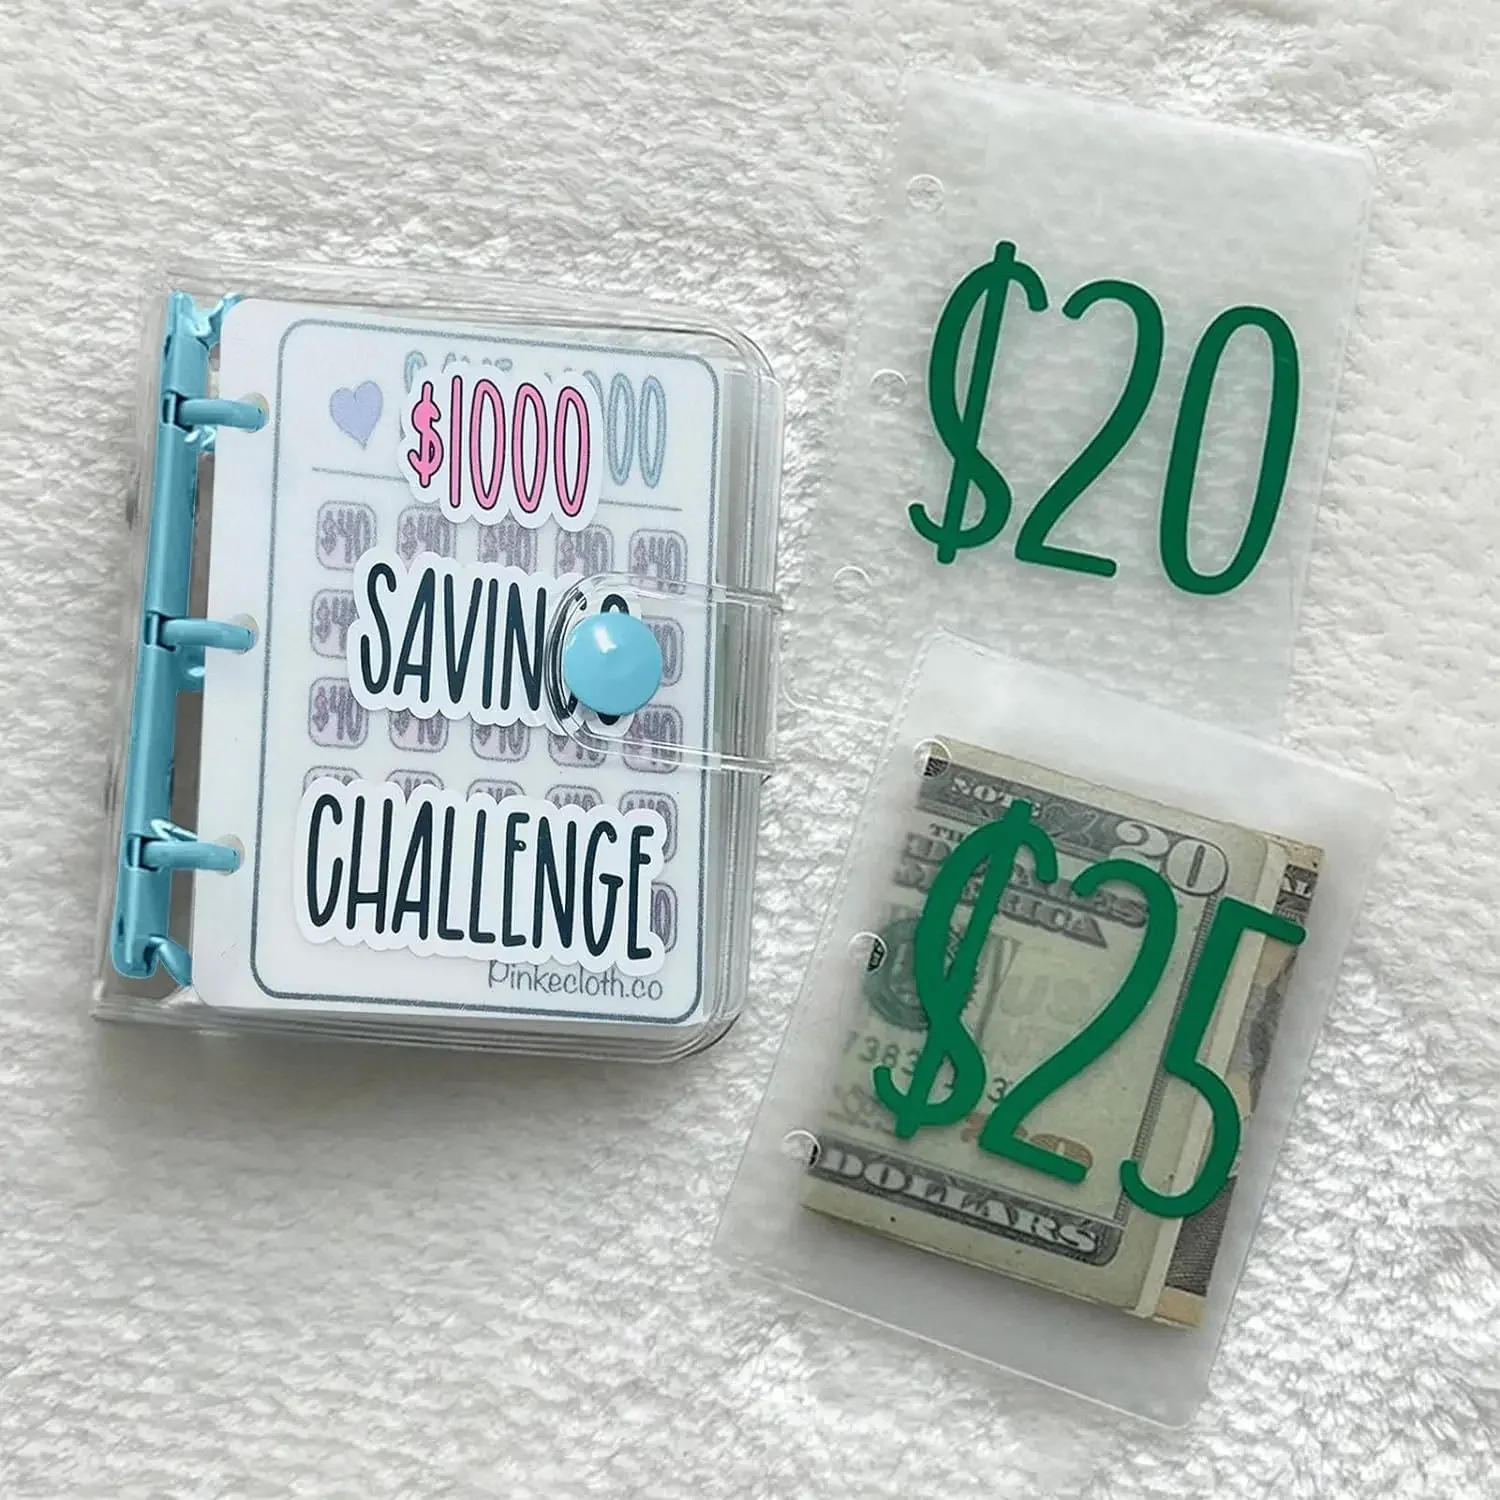 1000 Savings Challenge Prefdo Money Saving Binder Мини-бюджетный биндер с конвертами для наличных Простой и интересный способ сэкономить 1000 долларов наличными Изображение 1